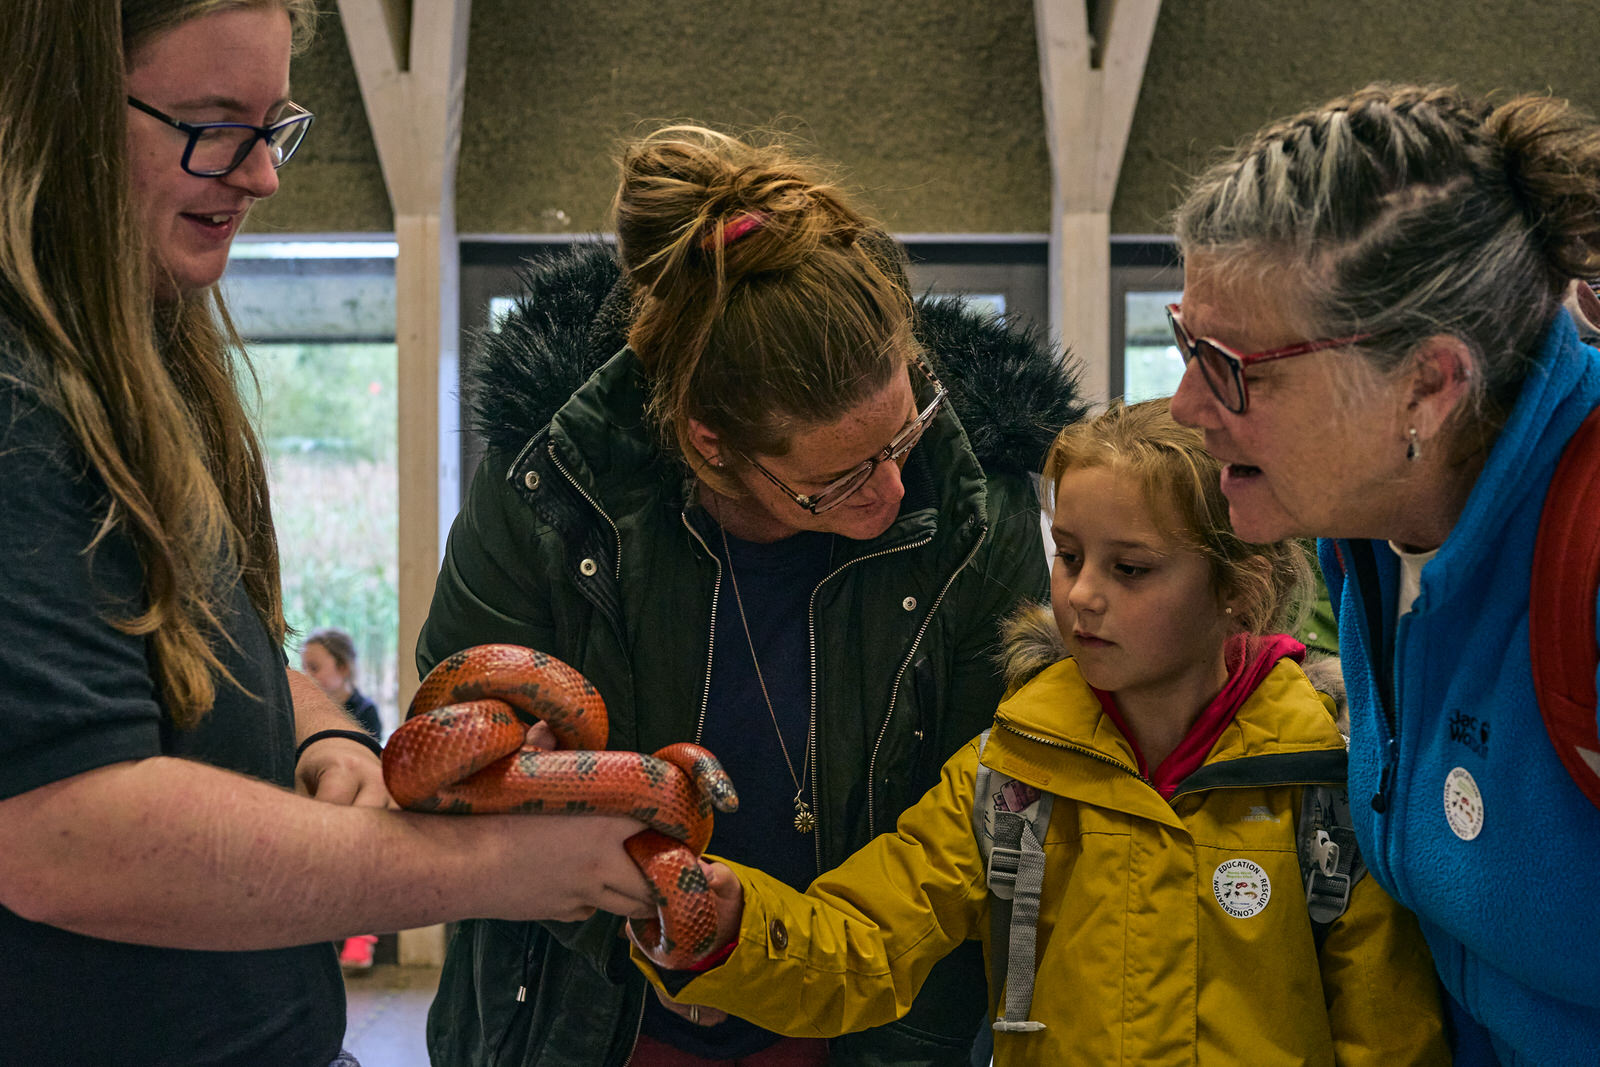 A family enthusiastically pet a corn snake